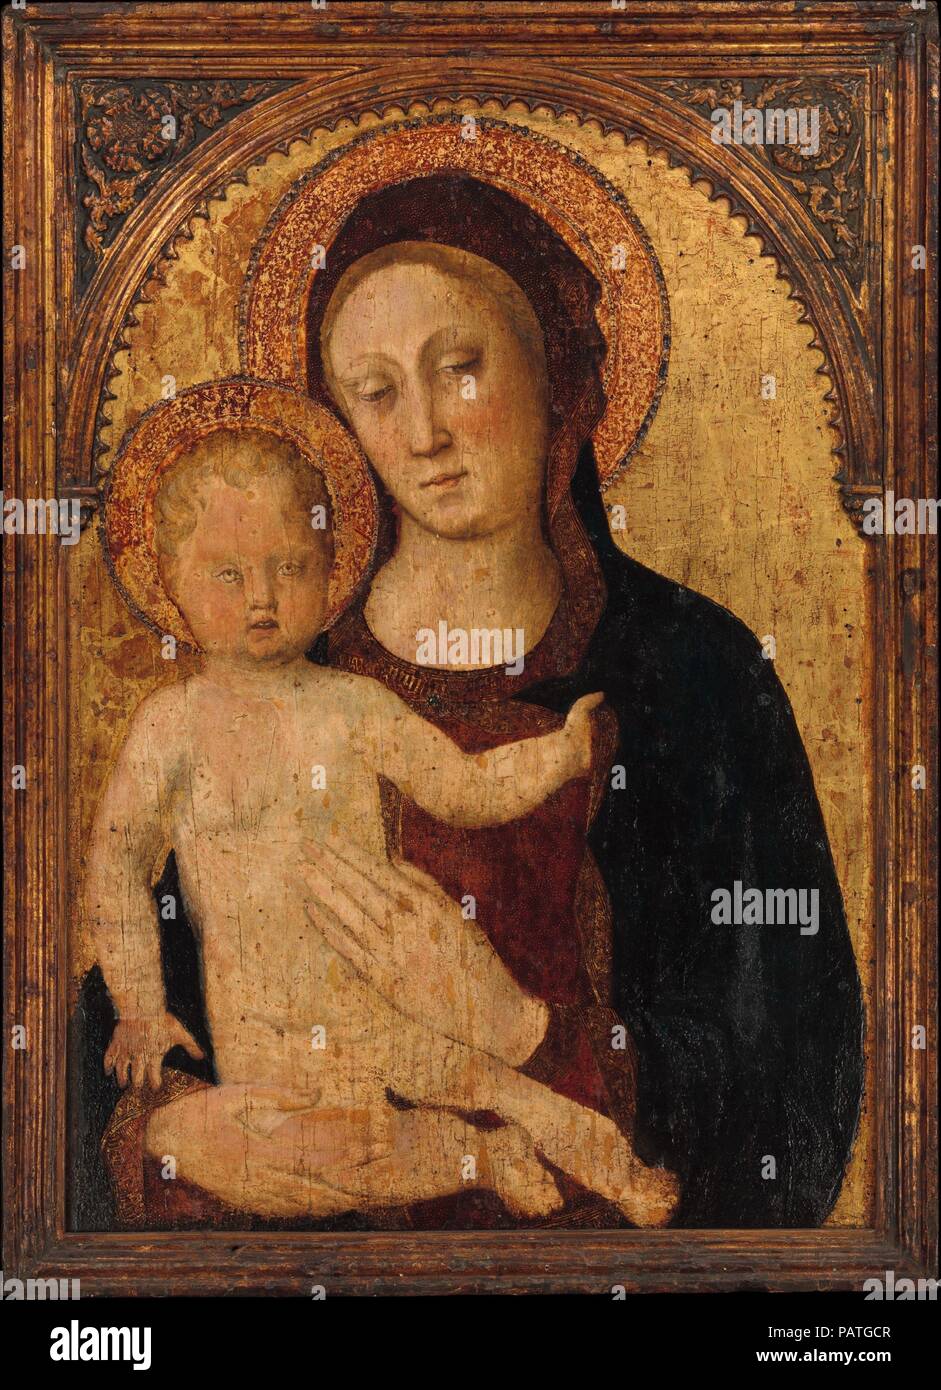 La Virgen y el niño. Artista: Jacopo Bellini (italiano, veneciano, active 1424-70). Dimensiones: En general, con la parte superior arqueada, 34 1/2 x 25 in. (87,6 x 63,5 cm); superficie pintada 30 1/2 x 21 3/4 pulg. (77,5 x 55,2 cm). Fecha: probablemente 1440s. Jacopo Bellini dominó la pintura veneciana en los años centrales del siglo XV y fue una figura clave en la creación de la pintura del Renacimiento veneciano. Esta es una de sus raras pinturas existentes, probablemente se realizará en los 1440s. Lamentablemente, la superficie de la pintura ha perdido la mayoría de sus pigmentos. La multa, dañados, frame es original. Museo: El Museo de Arte Metropolitano, Nueva Foto de stock